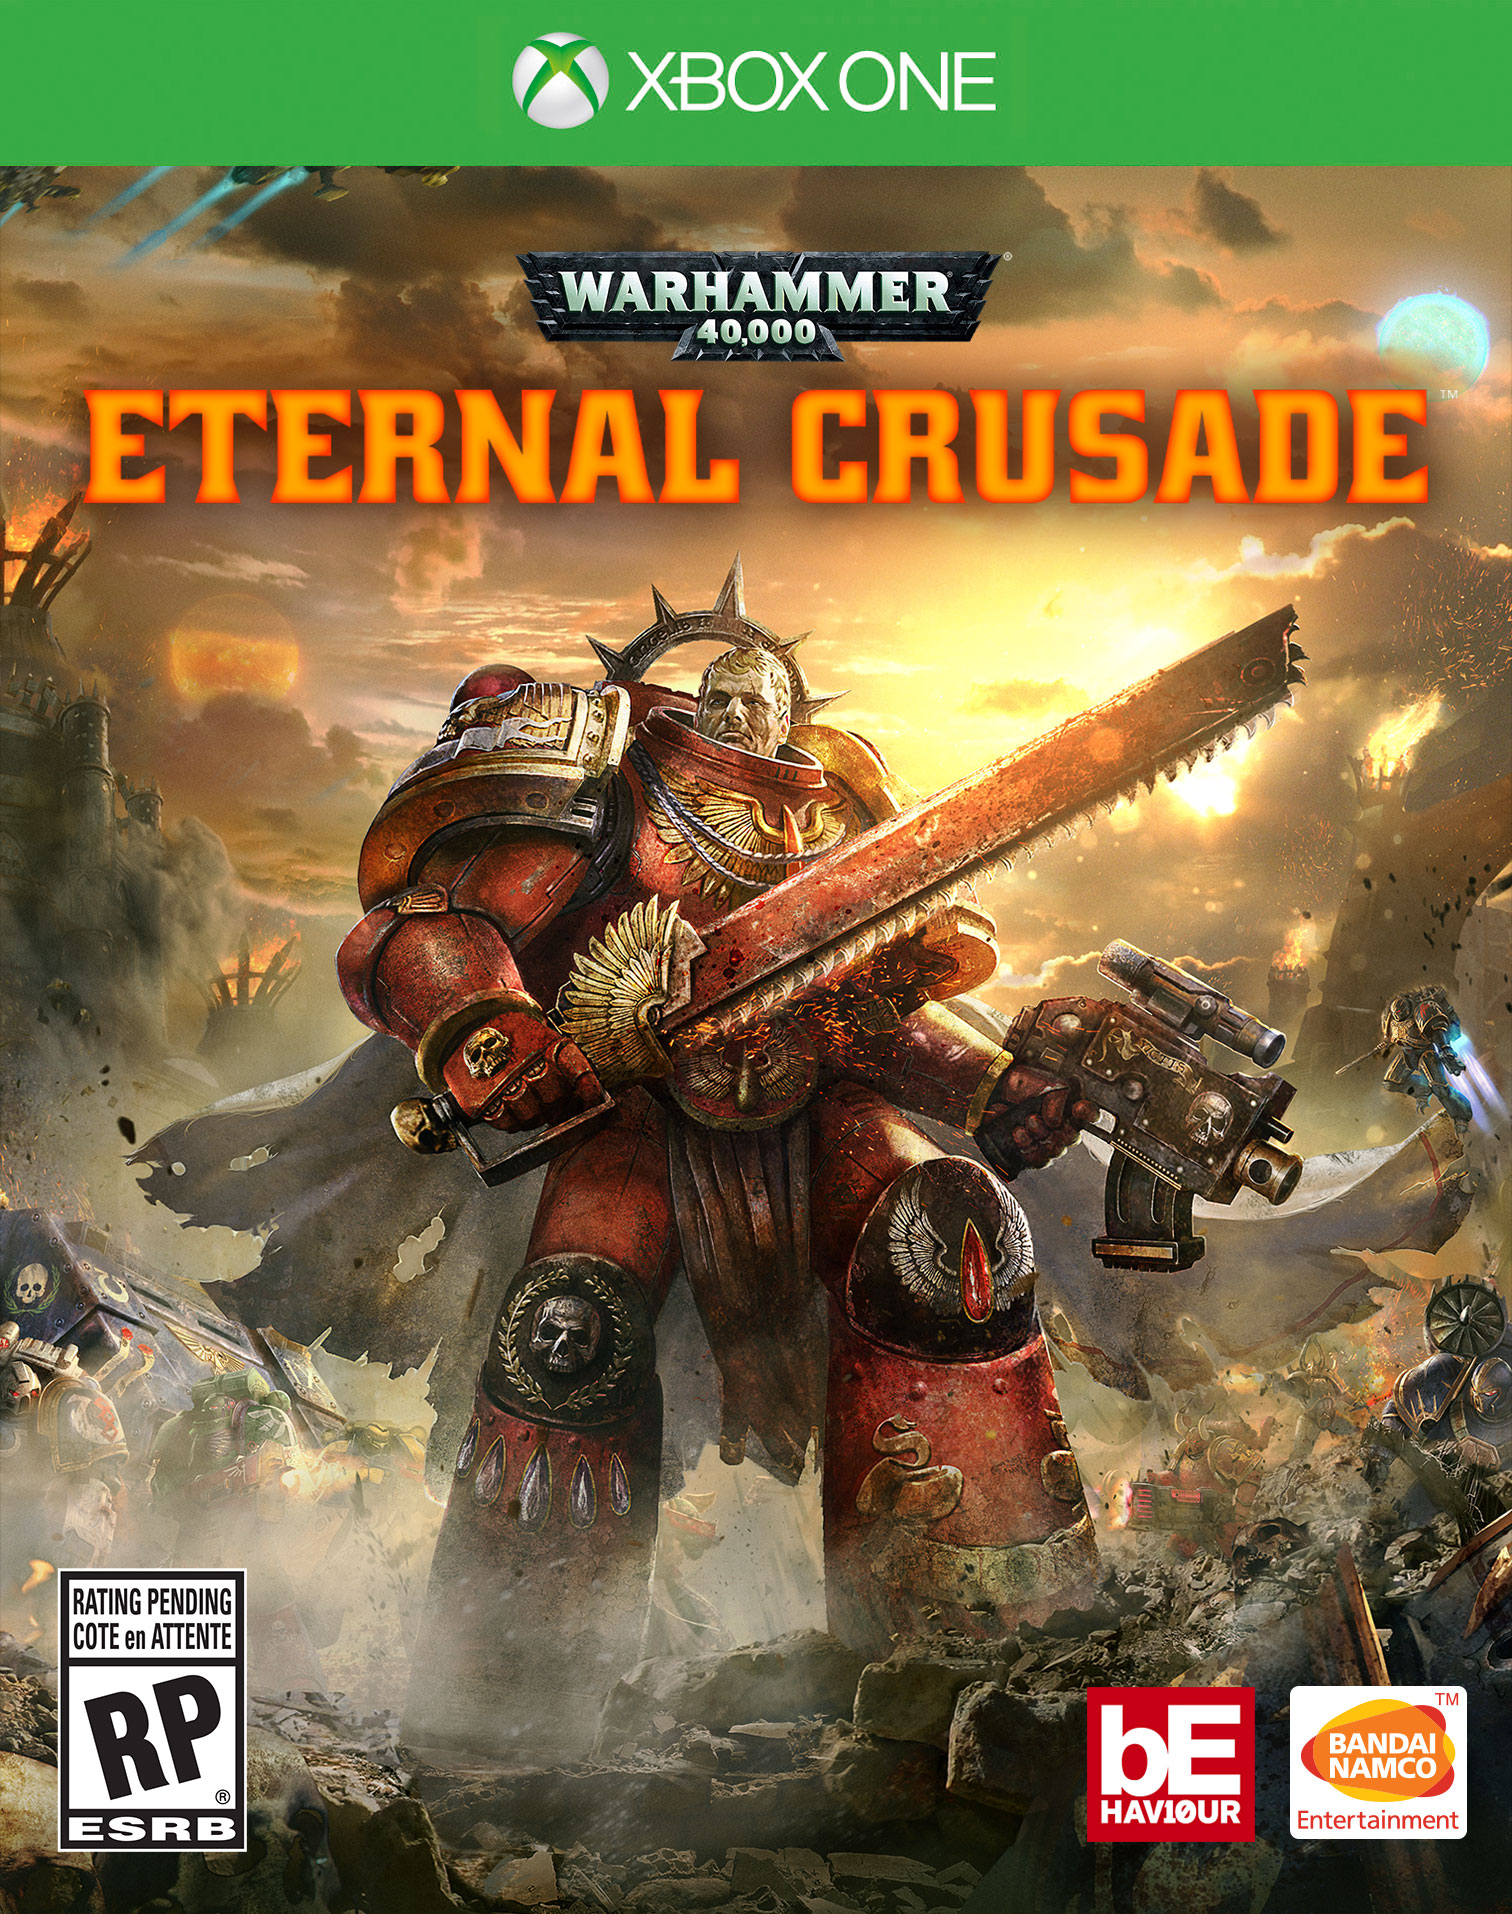 Warhammer 40k Eternal Crusade landing on PC next month Brutal Gamer